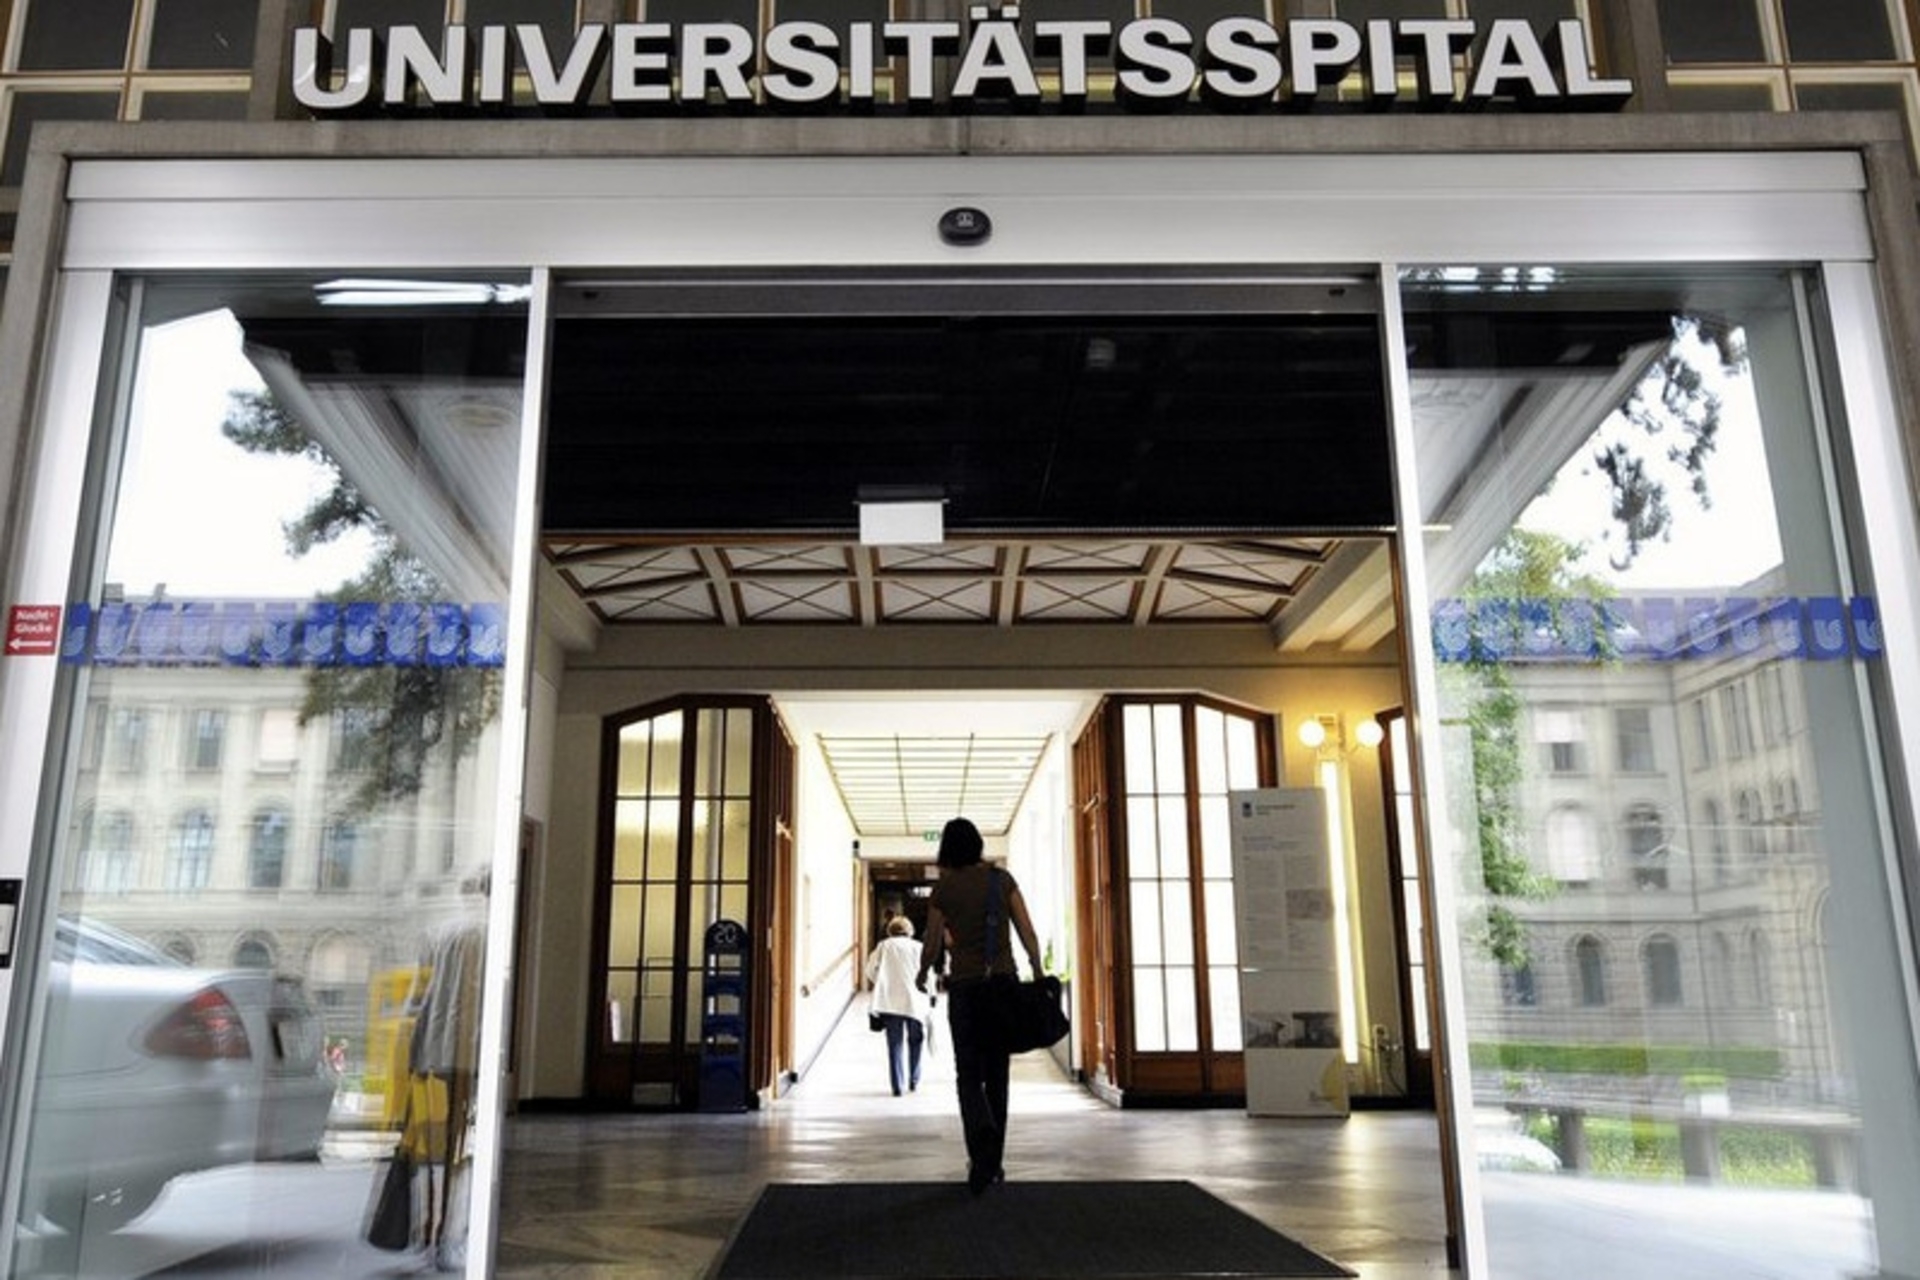 Ospedali universitari: gli ospedali universitari di quattro città svizzere (Basilea, Berna, Losanna e Ginevra) hanno aderito all'iniziativa 